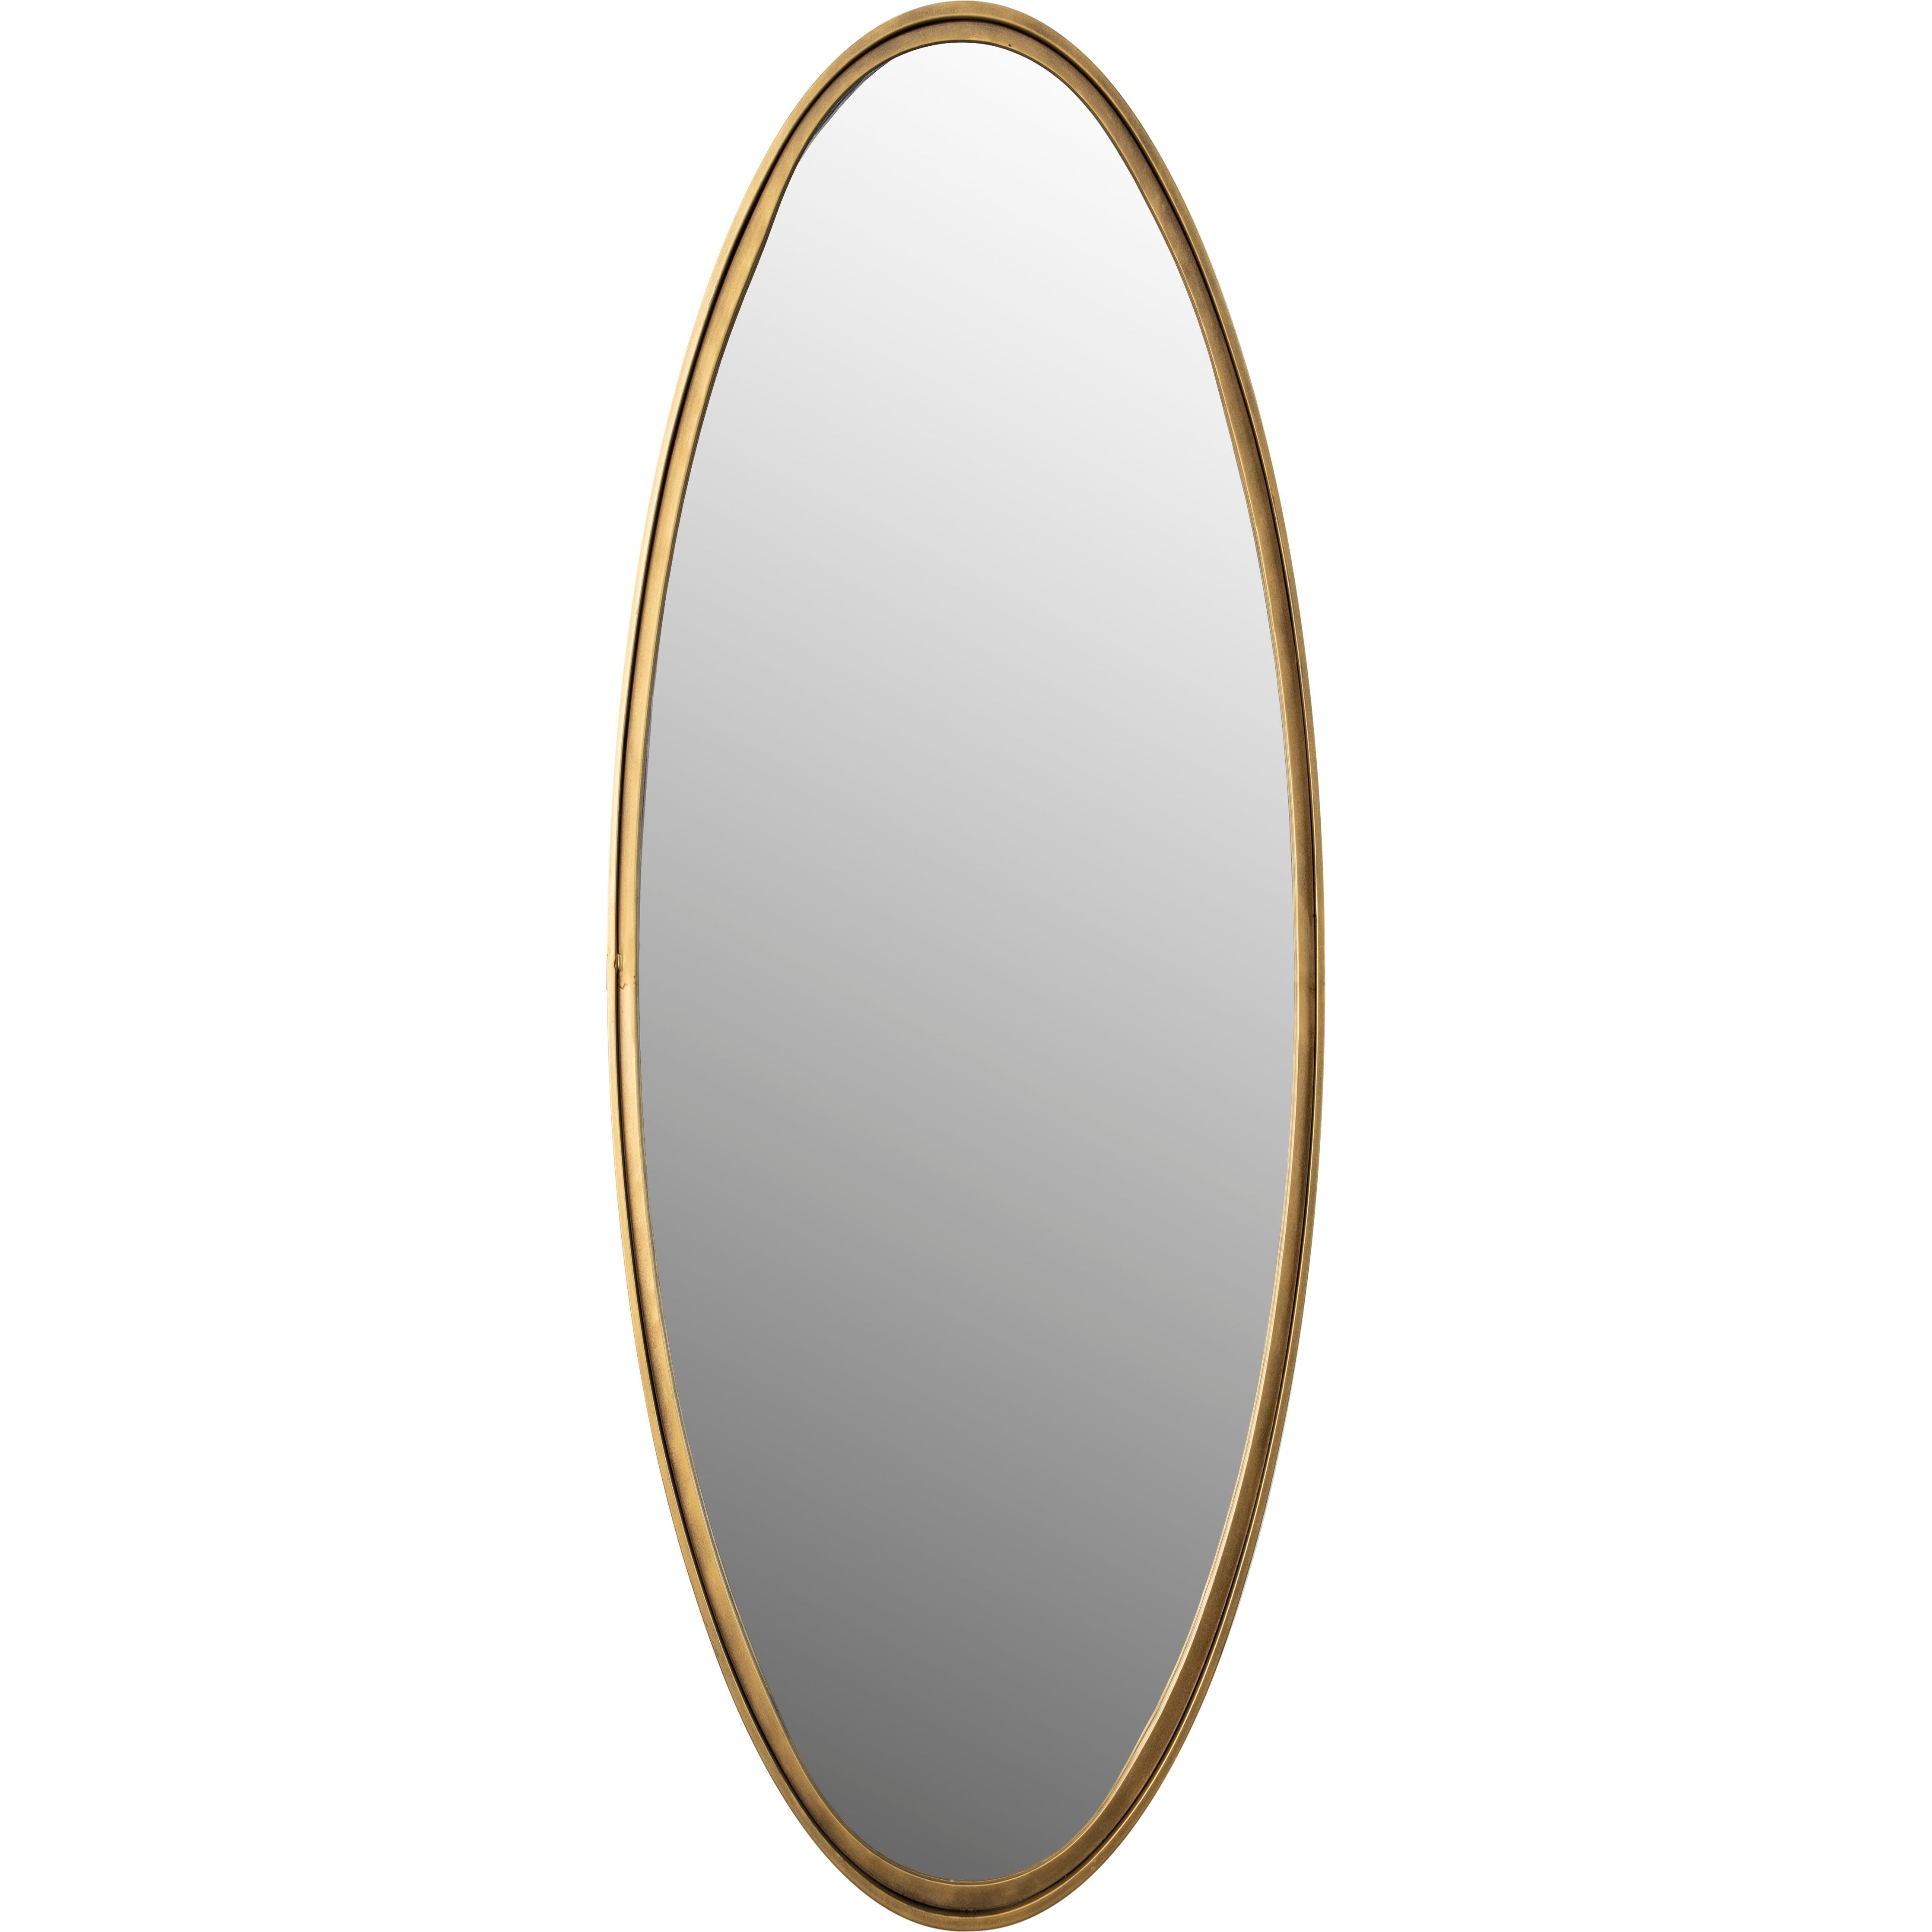 Mirror matz oval l antique brass